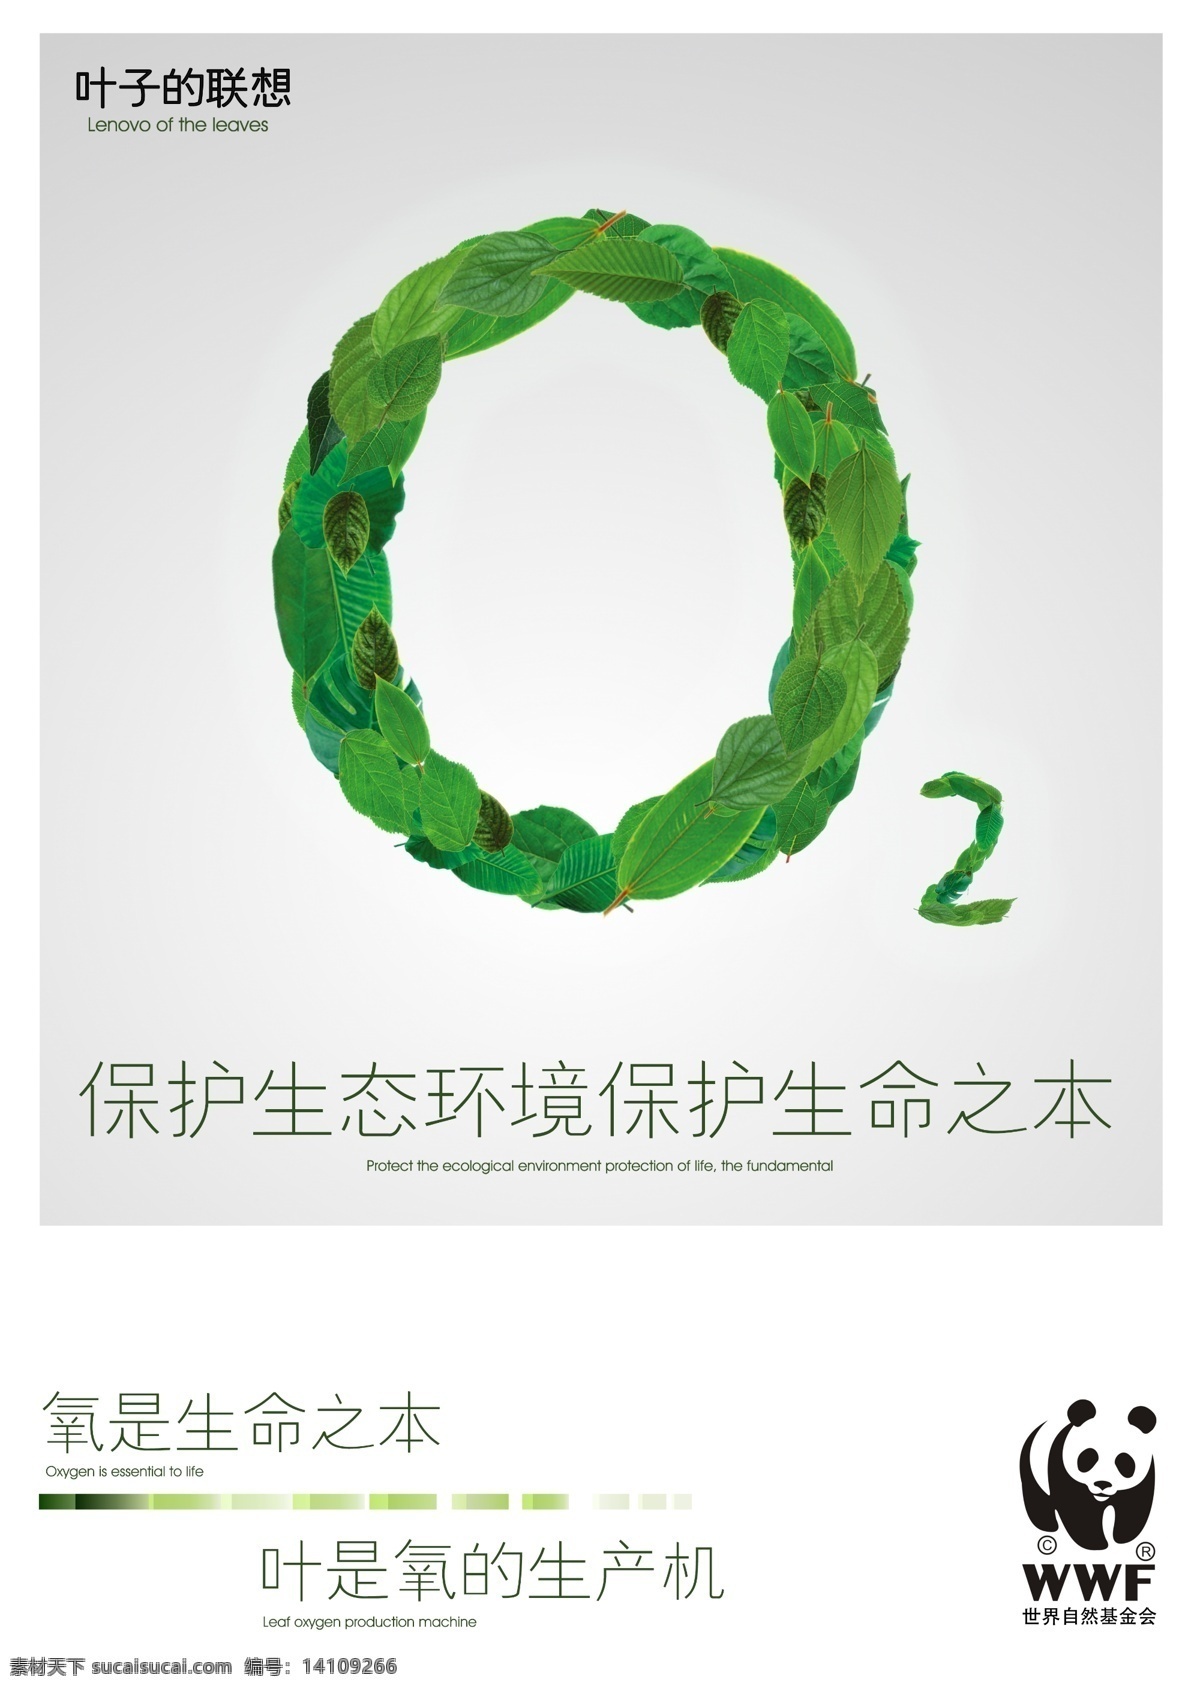 保护 环境 公益 海报 叶子 氧气 痒 o2 生态环境 公益海报 世界自然 基金会 生命之本 叶子的联想 树叶 广告设计模板 源文件